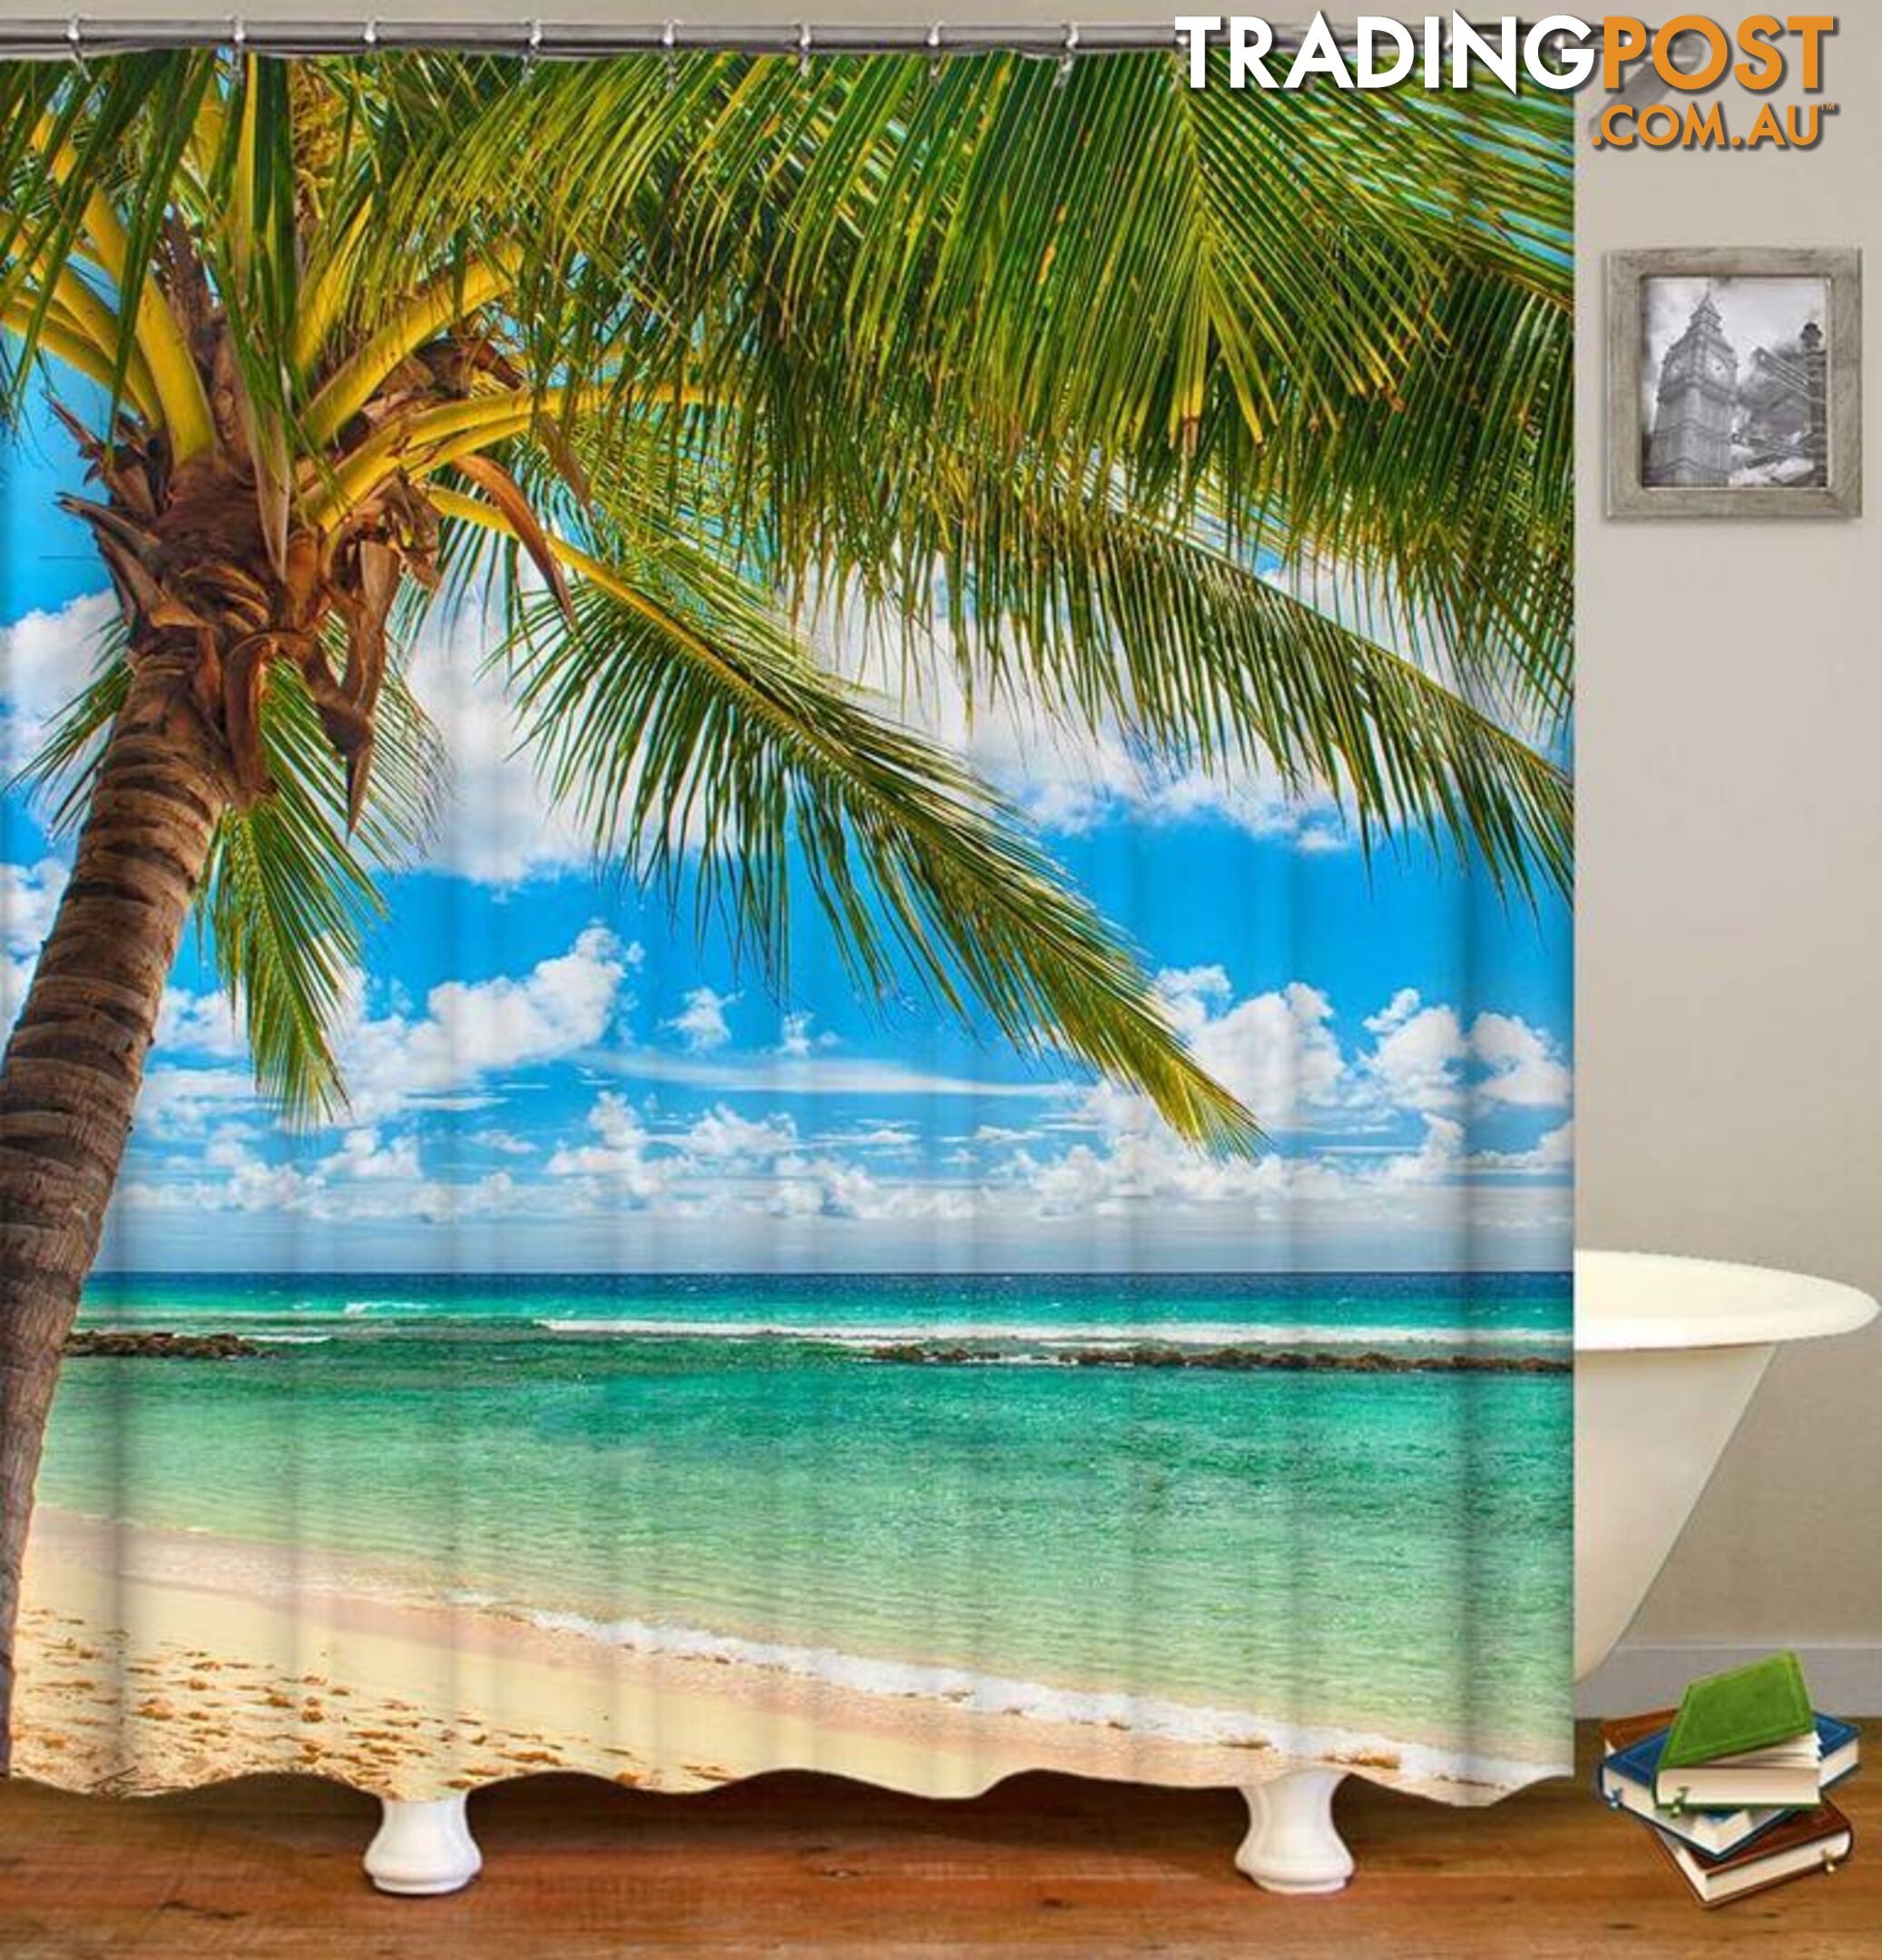 Sunny Beach Day Shower Curtain - Curtain - 7427046080682